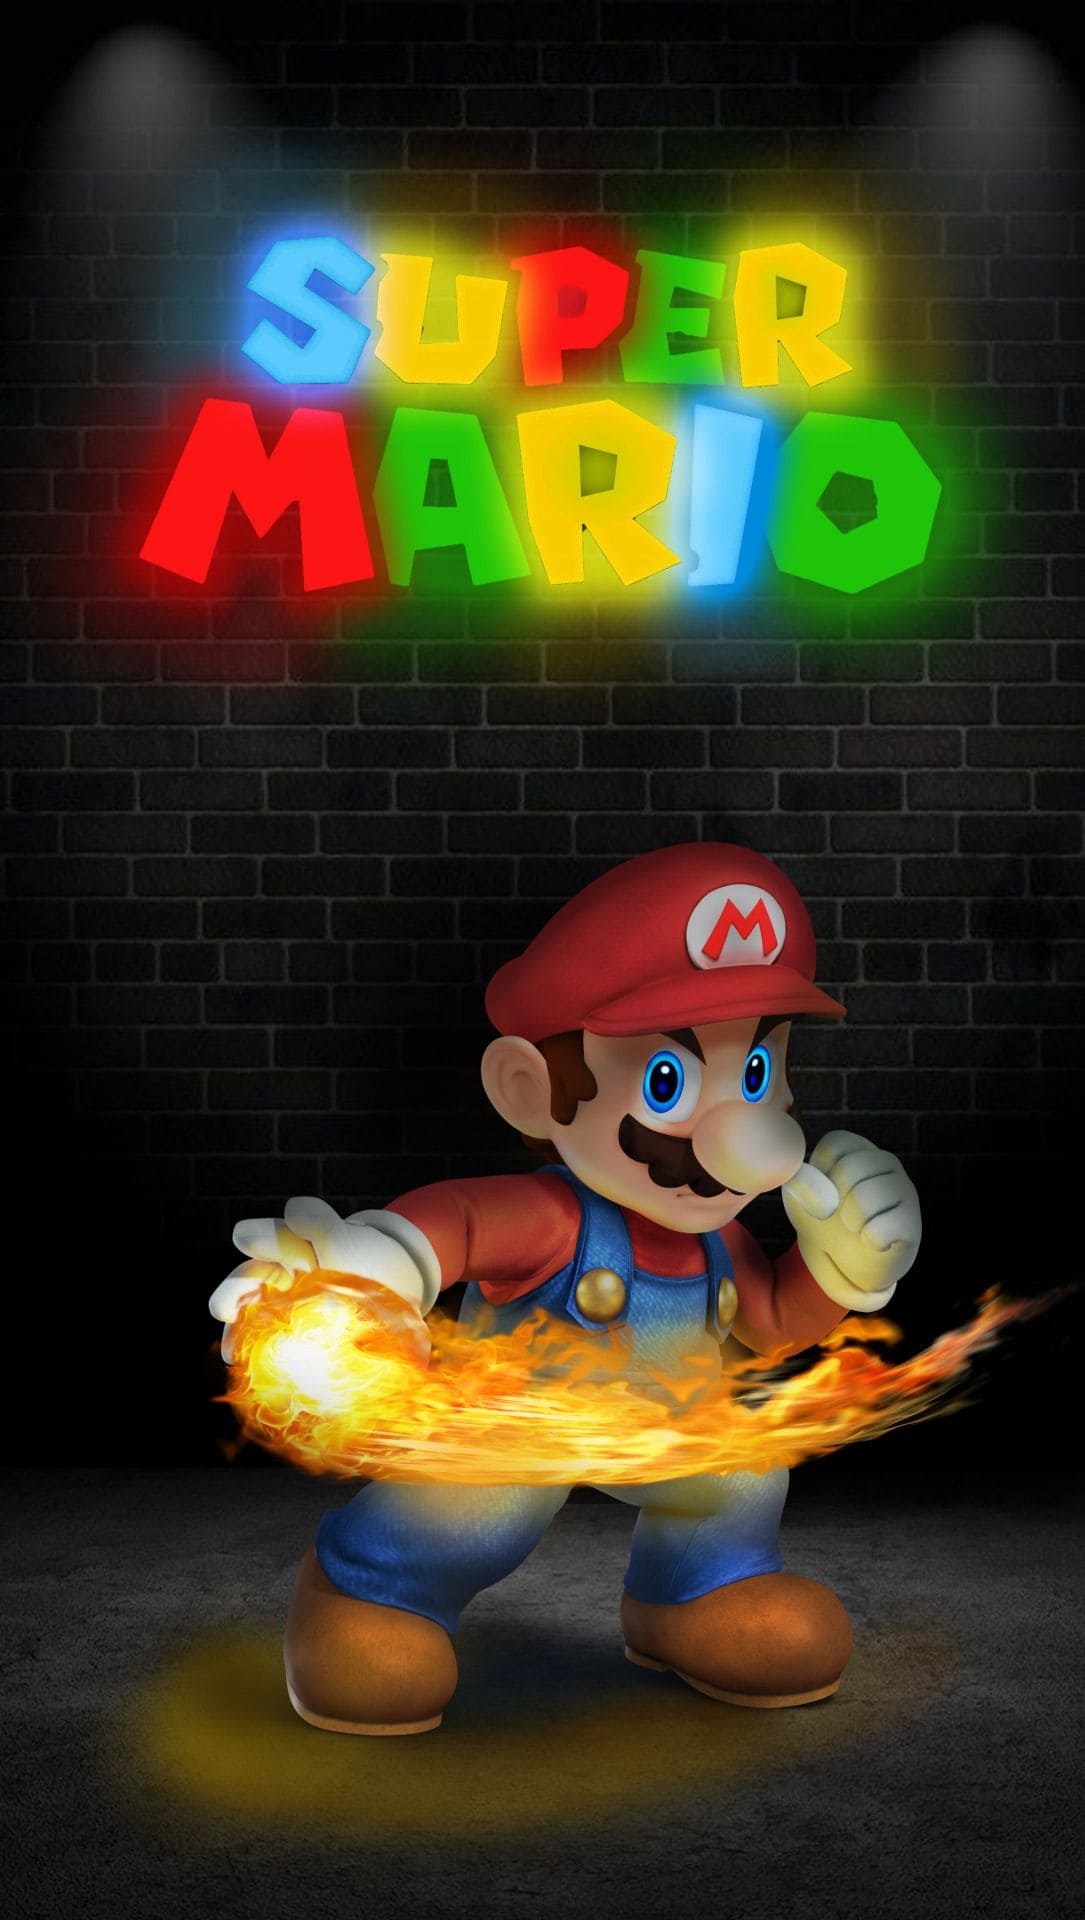 Mario Wallpapers - Top 35 Best Super Mario Backgrounds